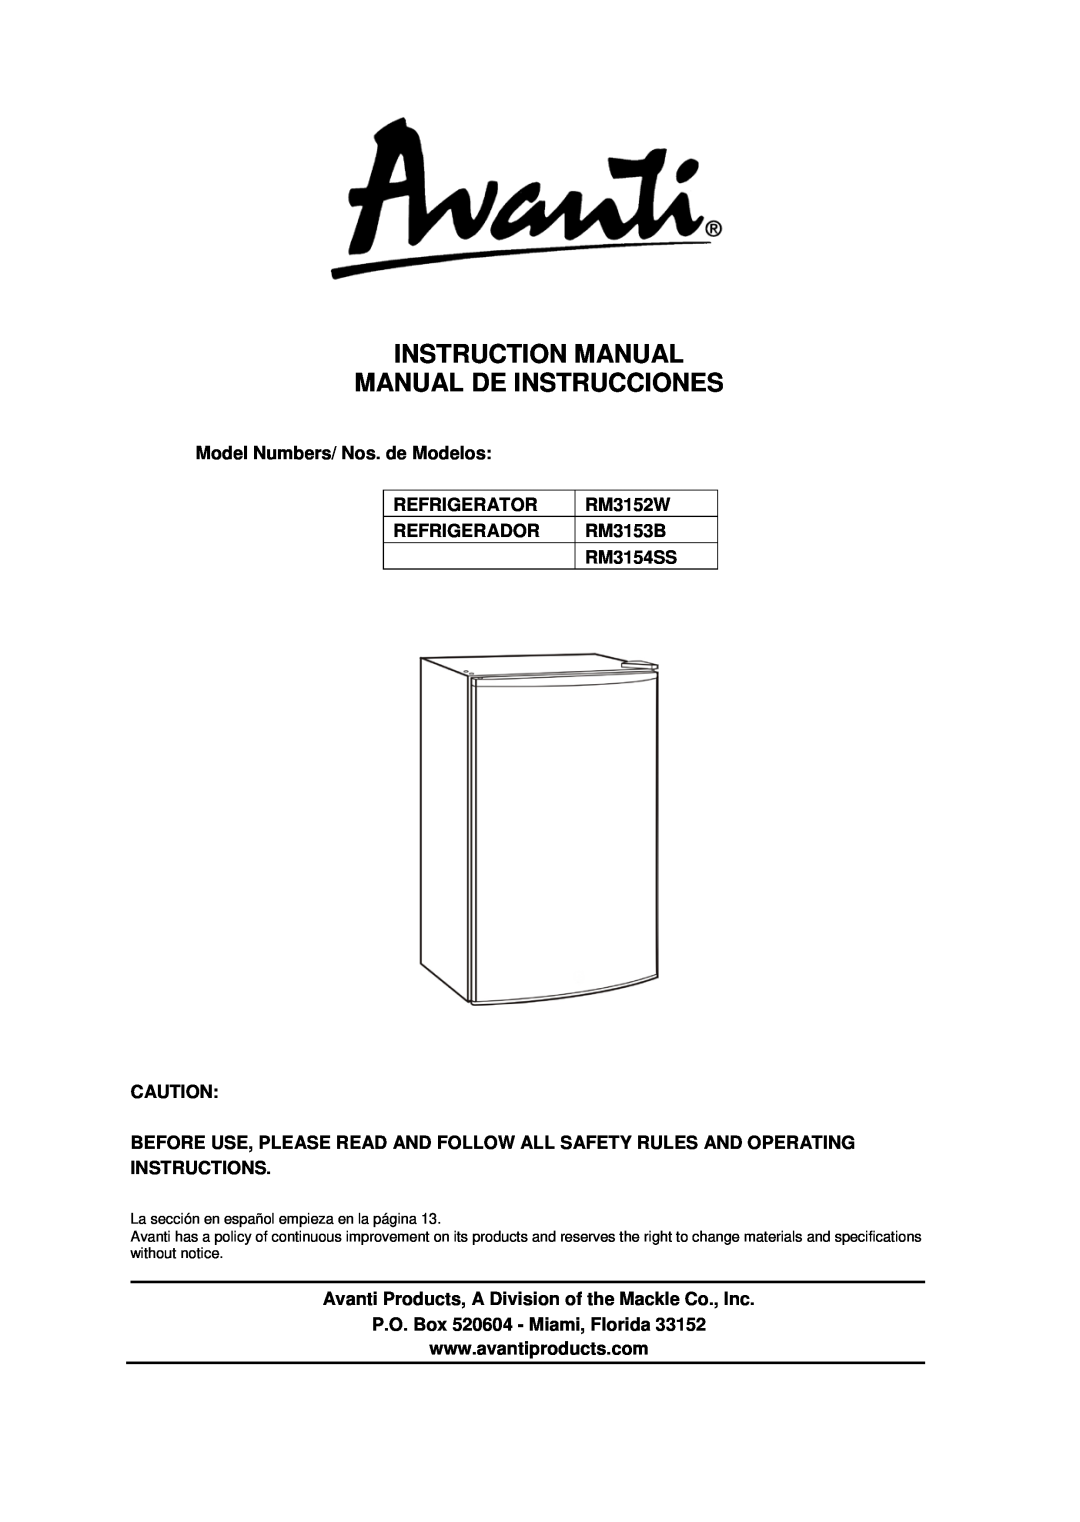 Avanti RM3154SS instruction manual Model Numbers/ Nos. de Modelos, Refrigerator, RM3152W, Refrigerador, RM3153B 